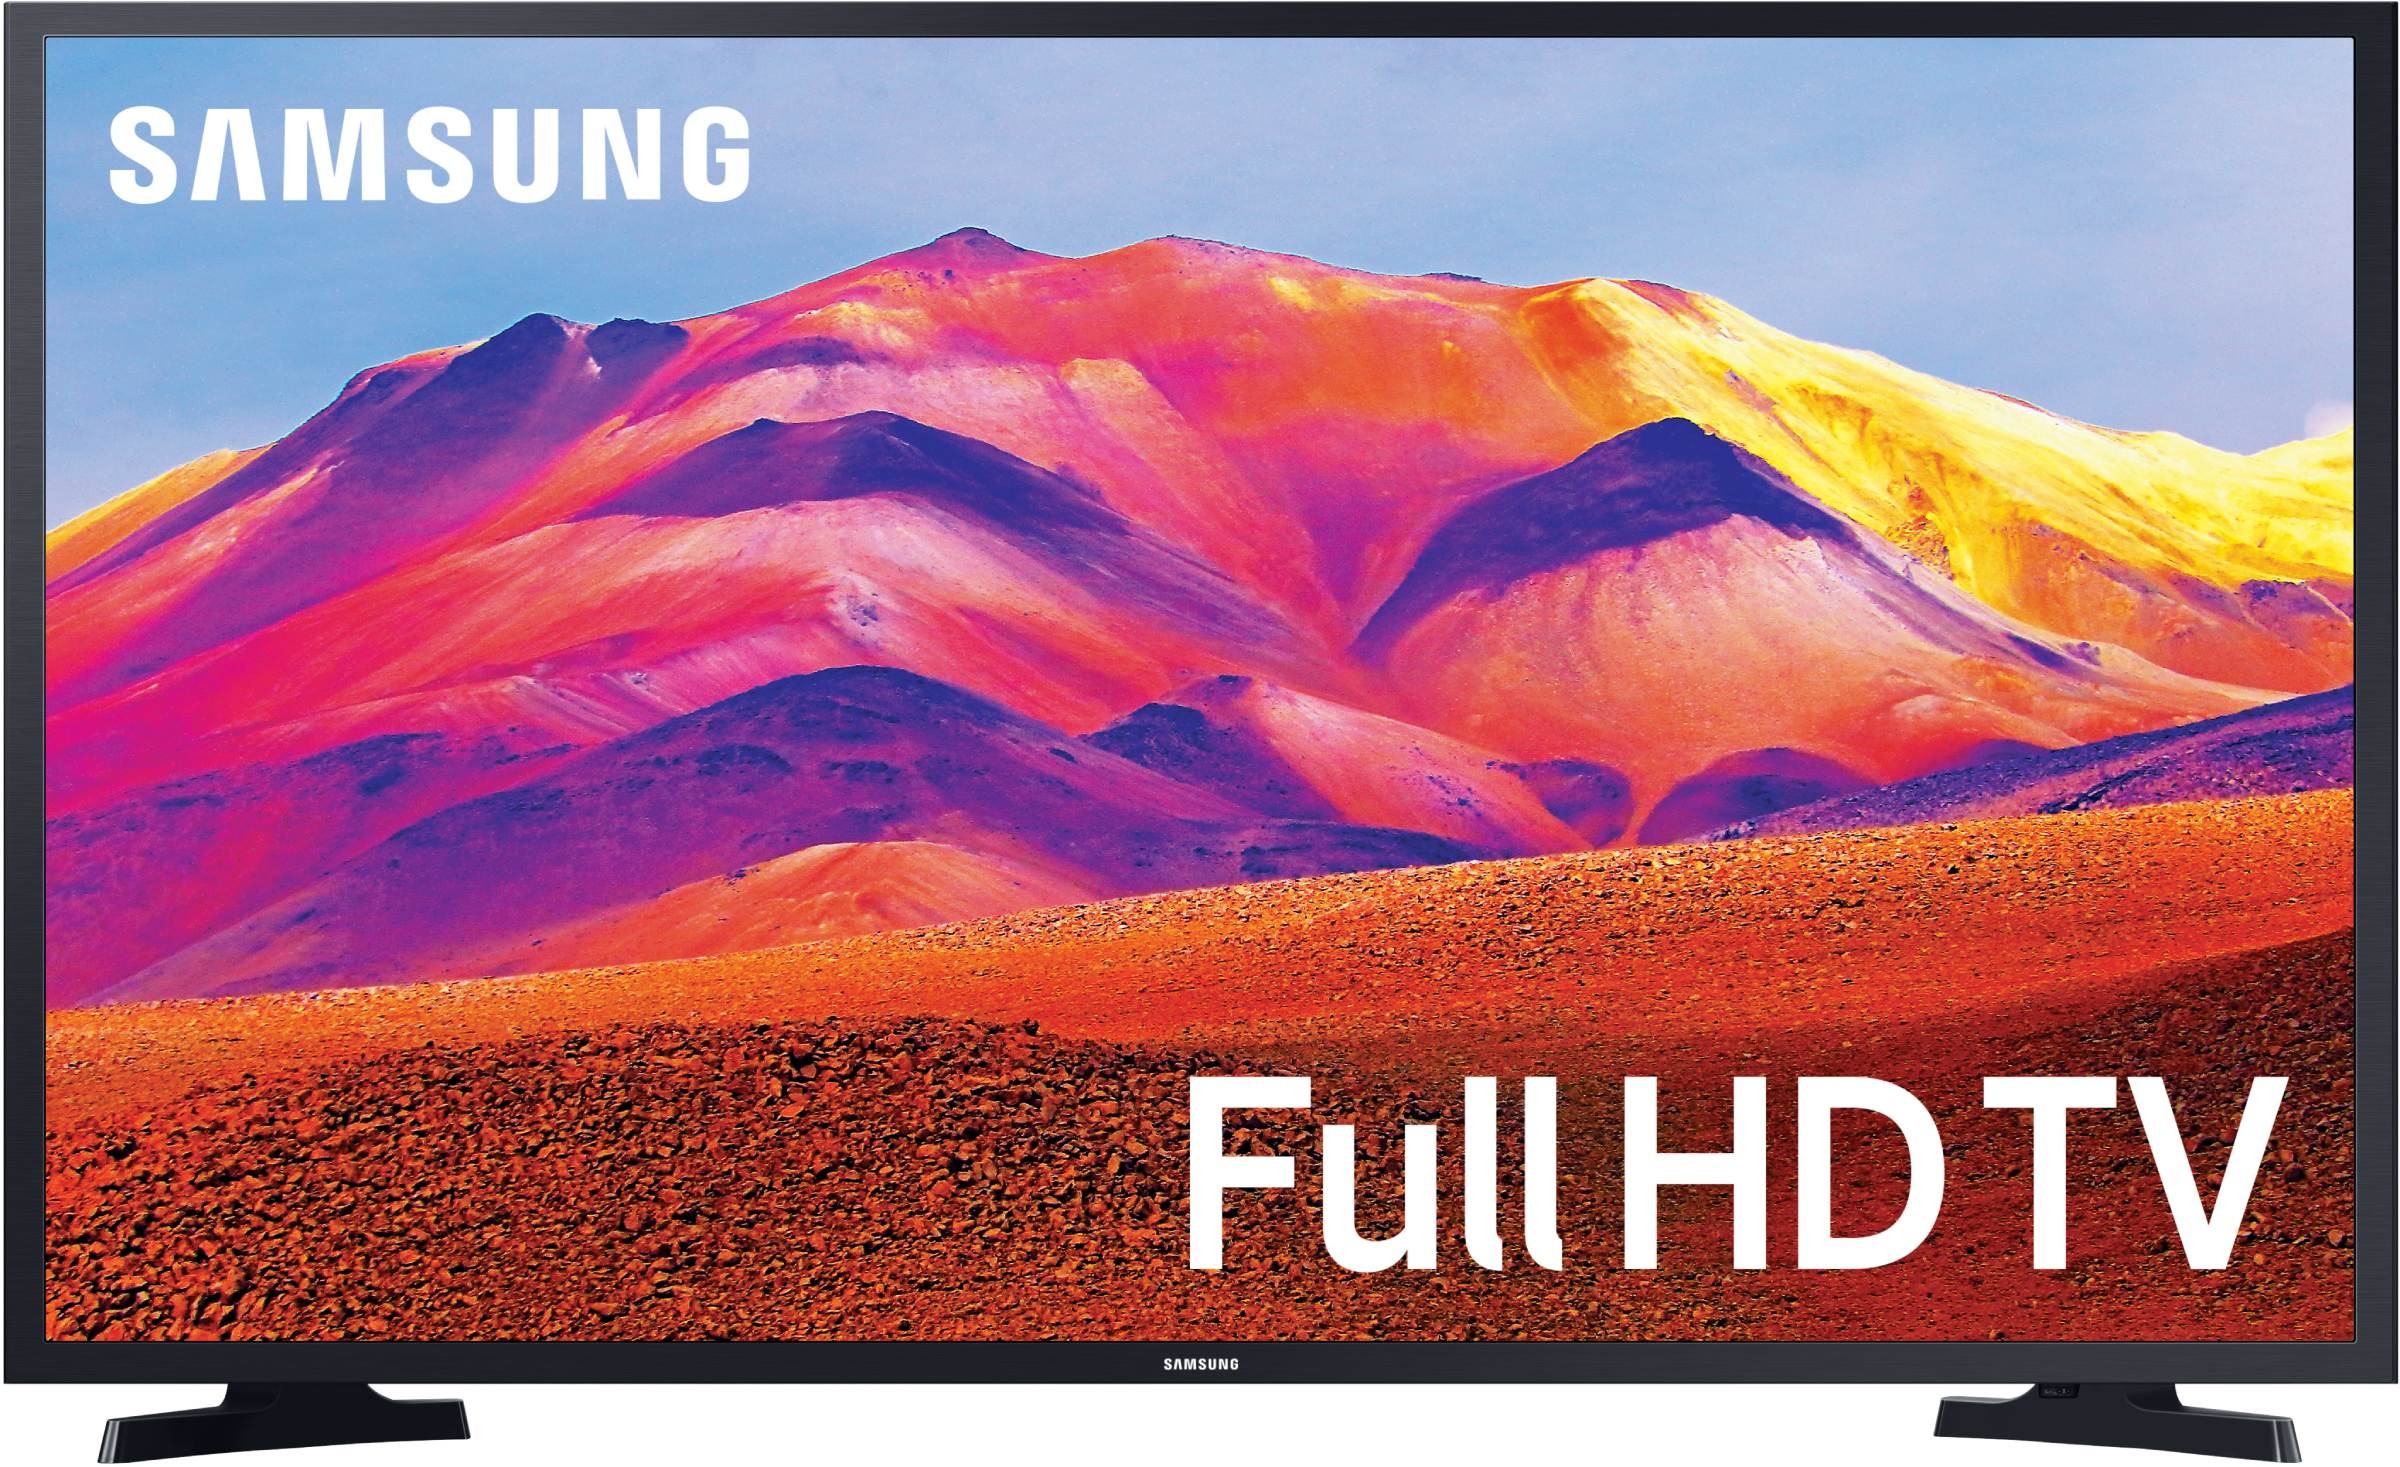 SAMSUNG TV LED Full HD 80 cm 50Hz Smart TV 32" - UE32T5375CD